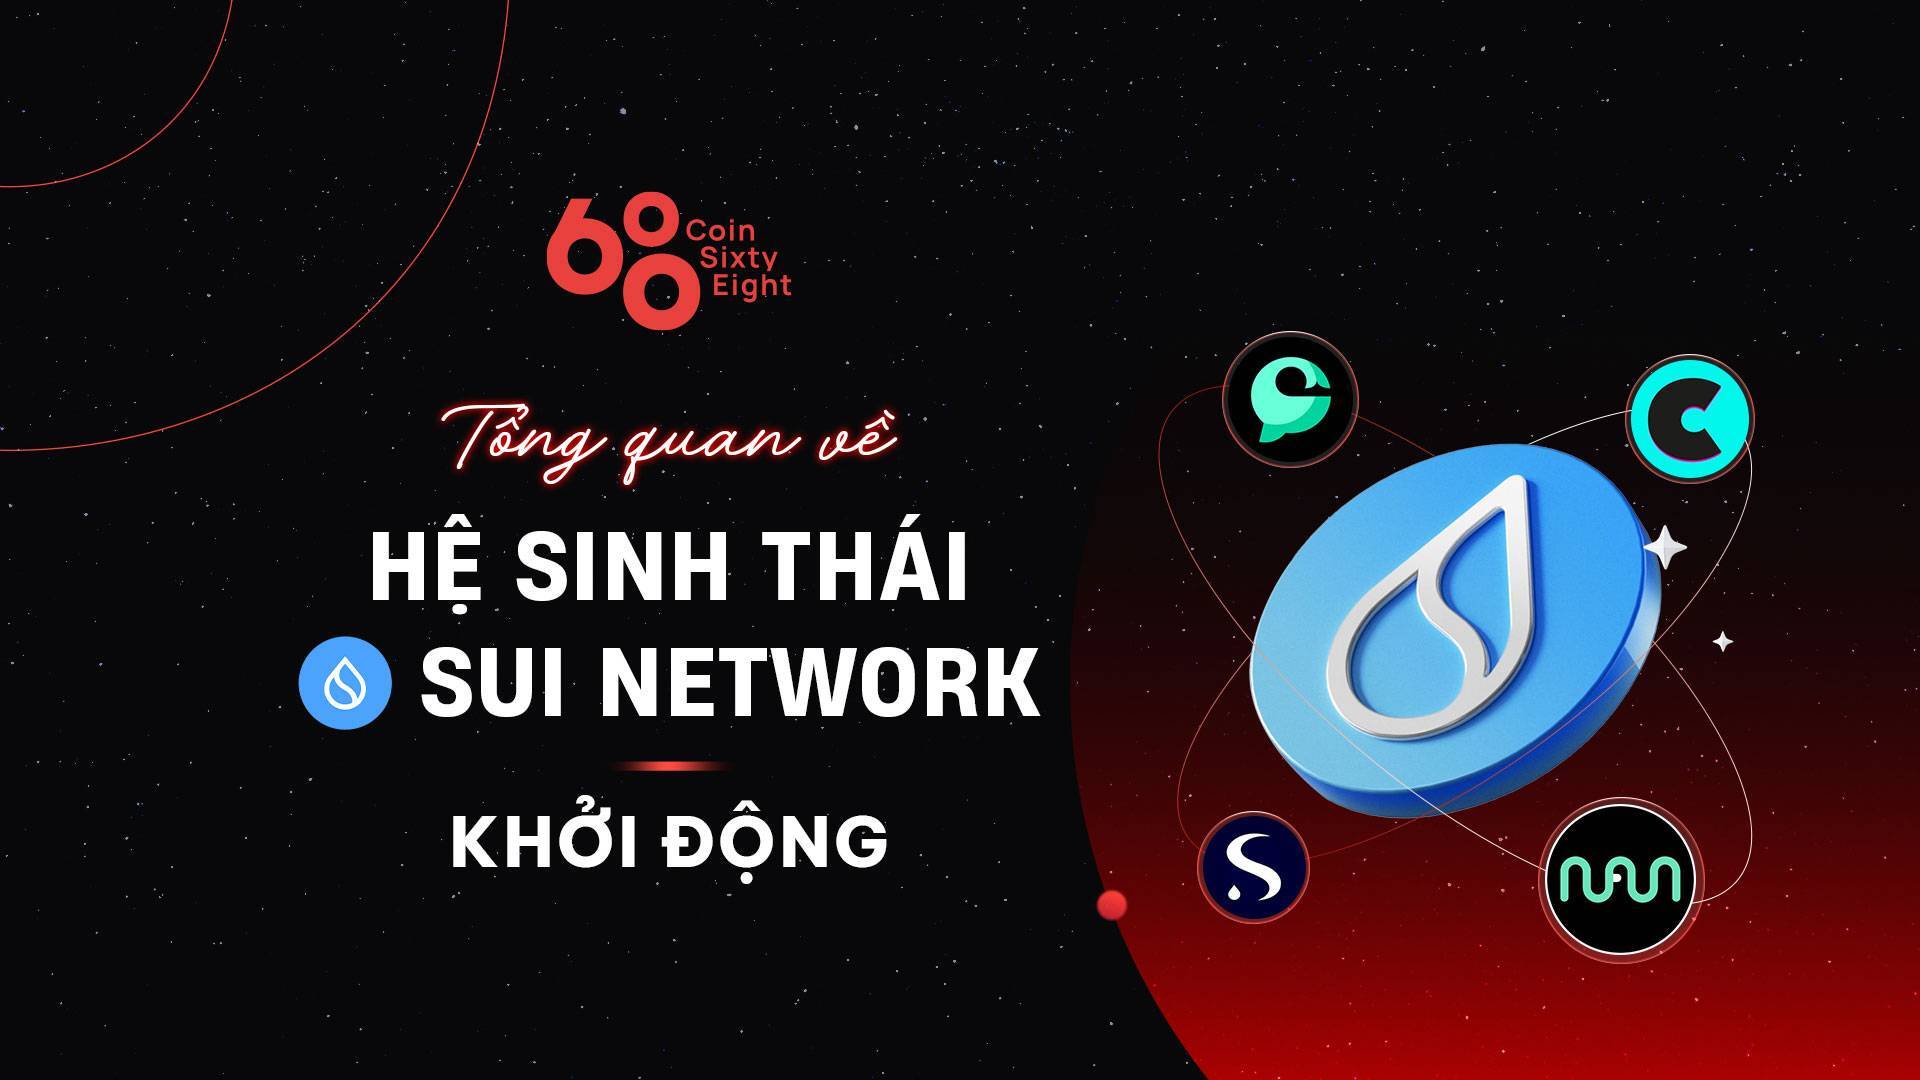 Tổng Quan Về Hệ Sinh Thái Sui Network Khởi Động